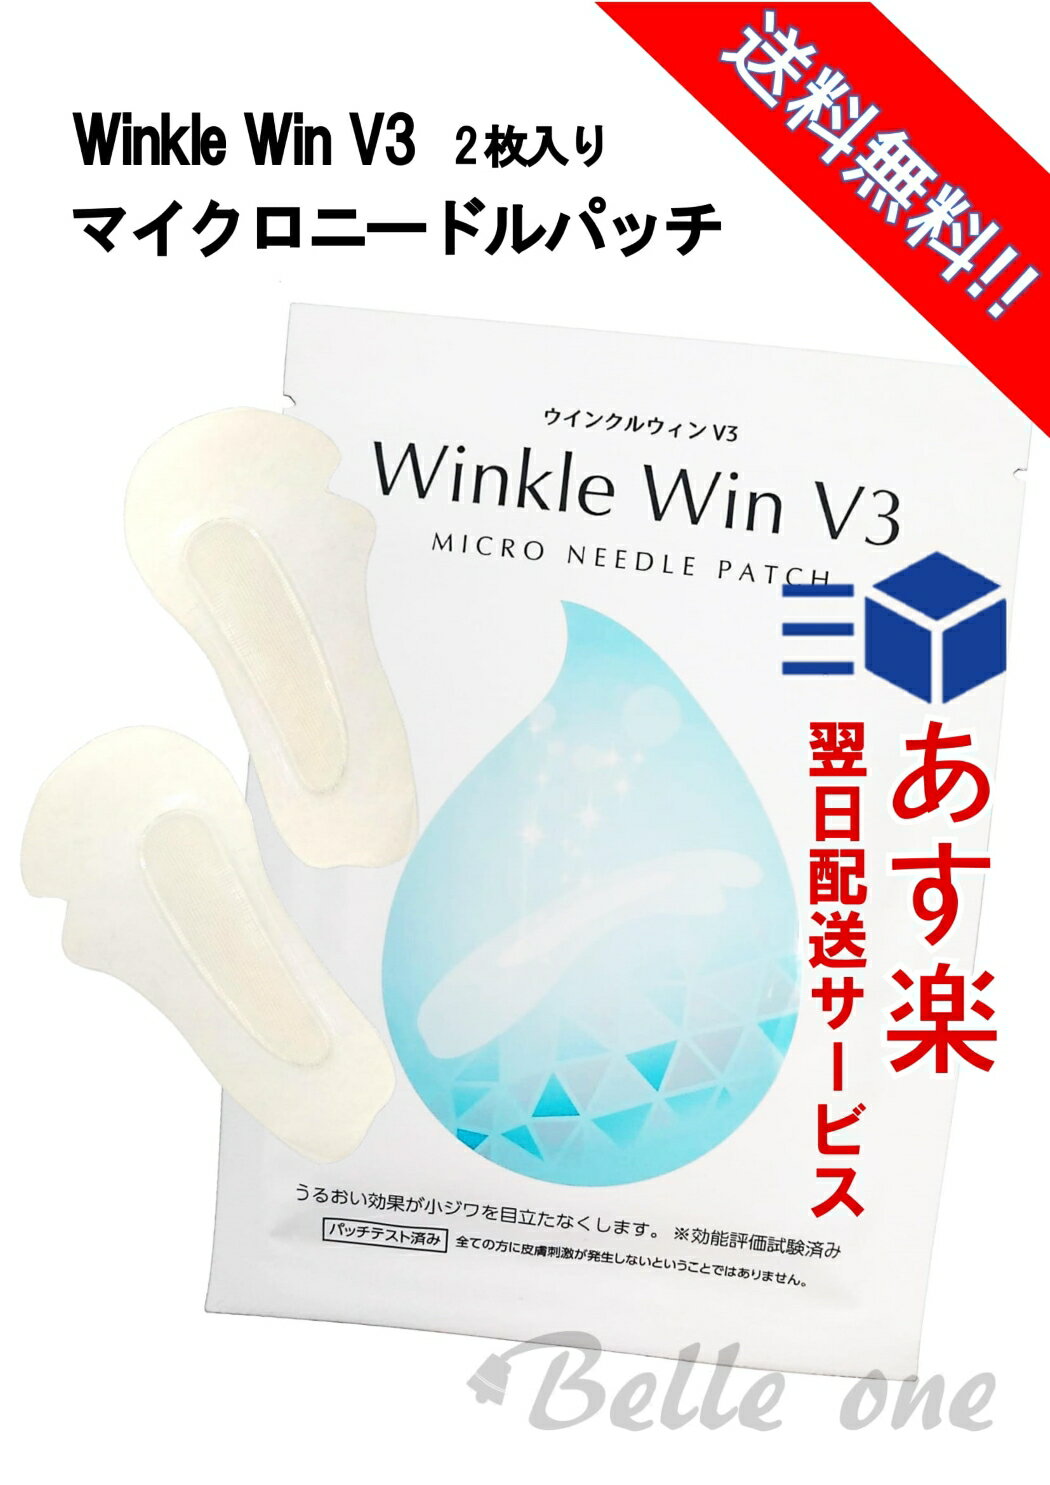 マイクロ ニードルパッチ Winkle Win V3 ネコポス配送　【最速・あす楽】【送料無料】